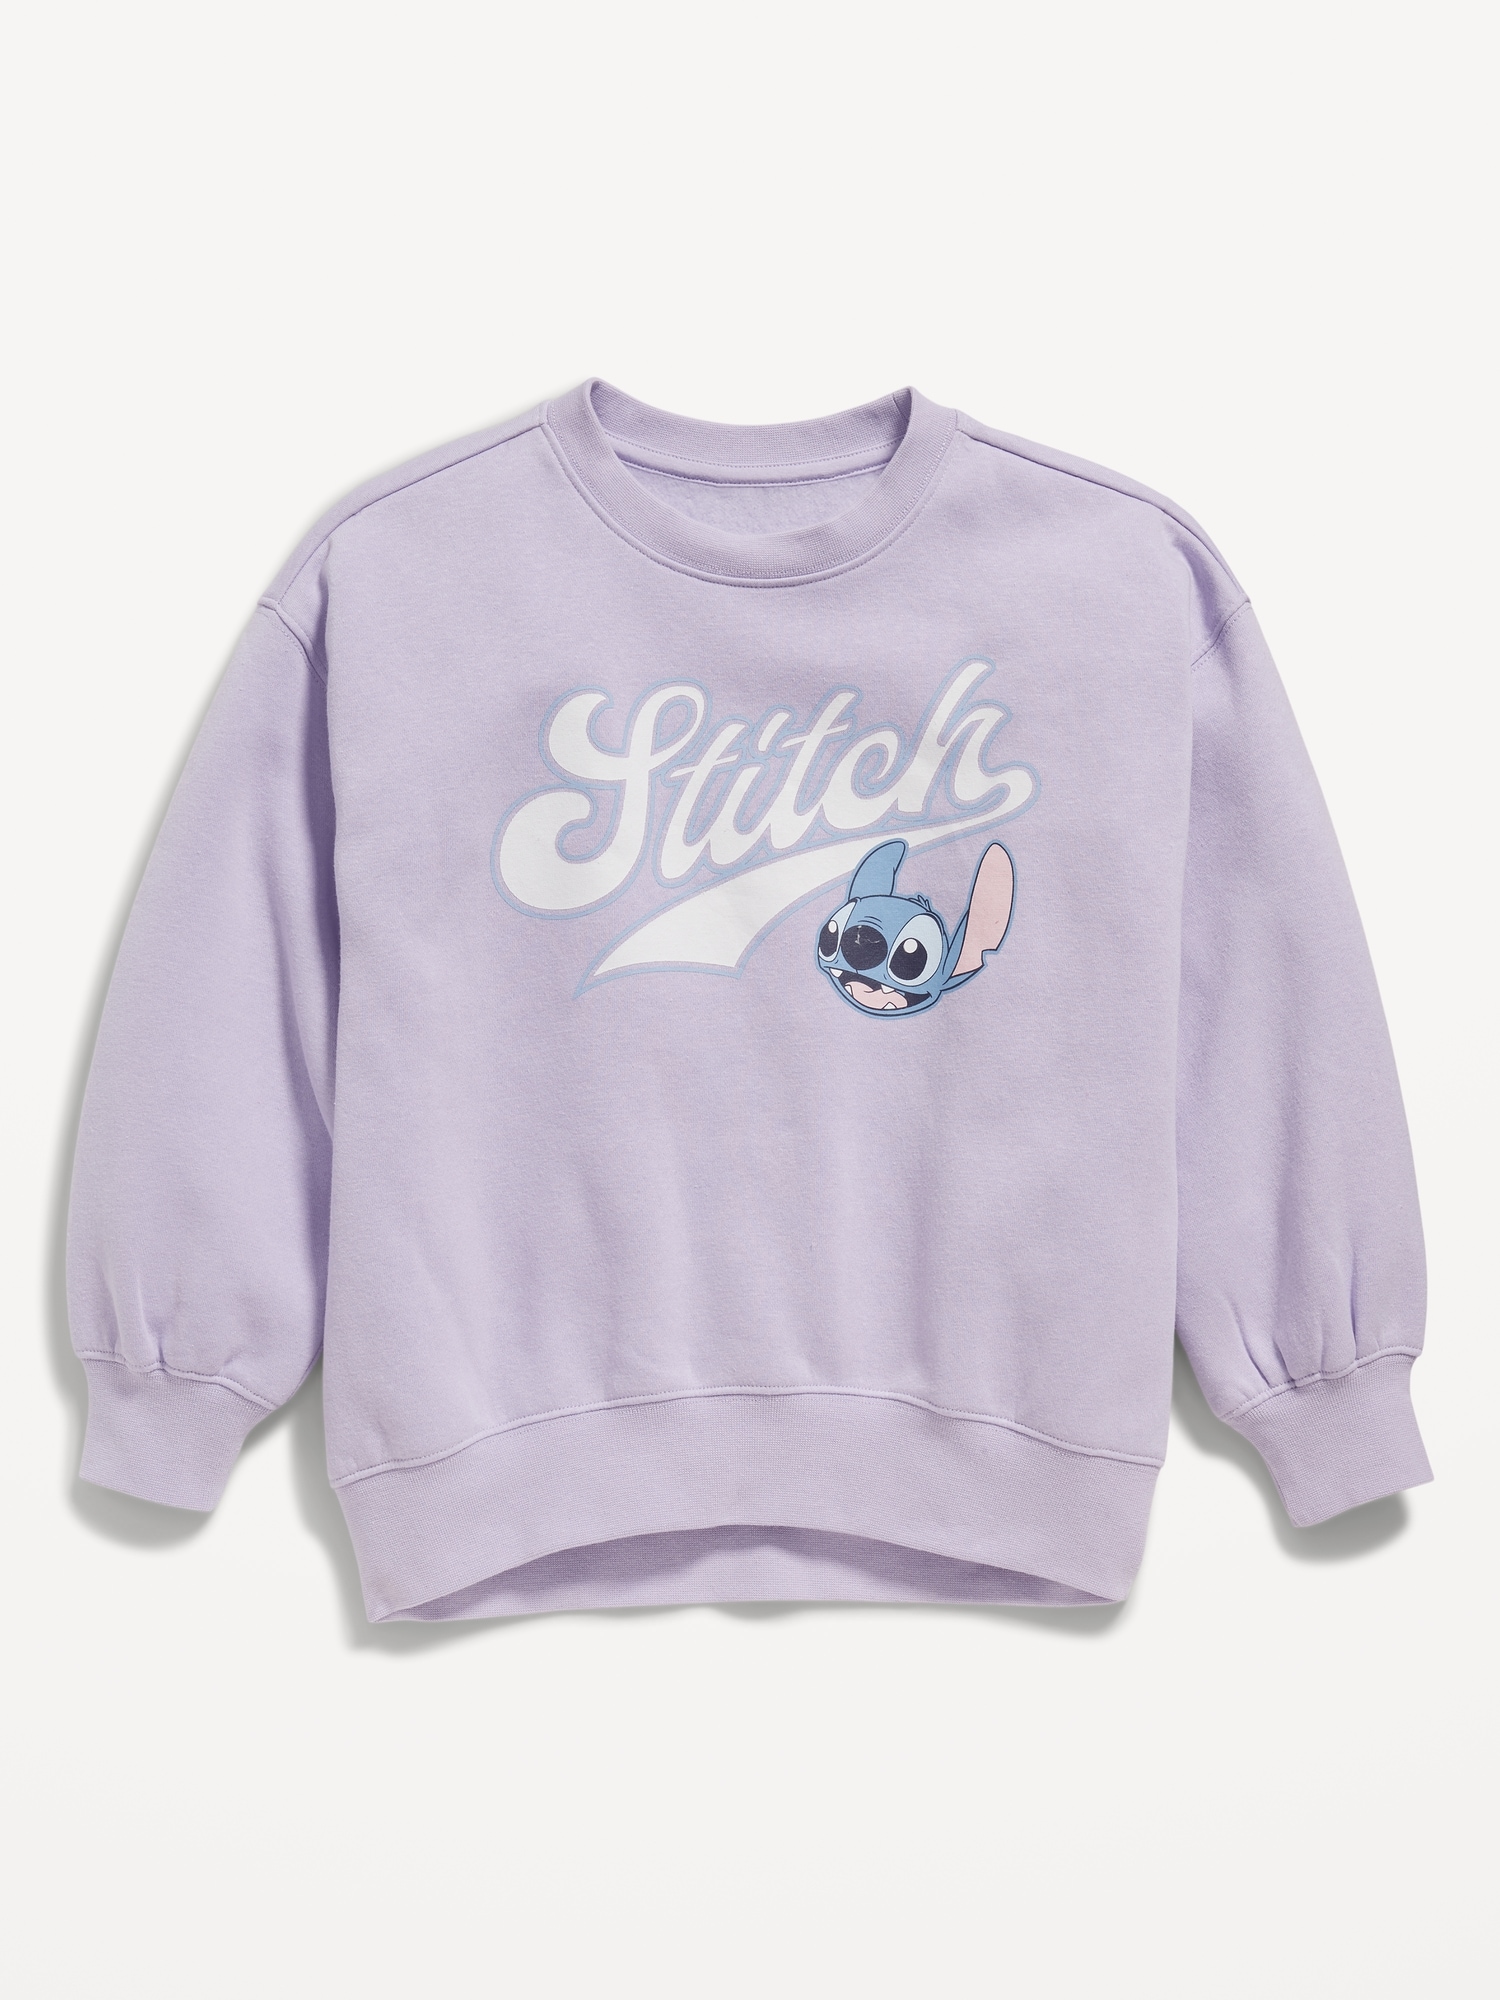 Licensed Pop-Culture Crew-Neck Sweatshirt for Girls